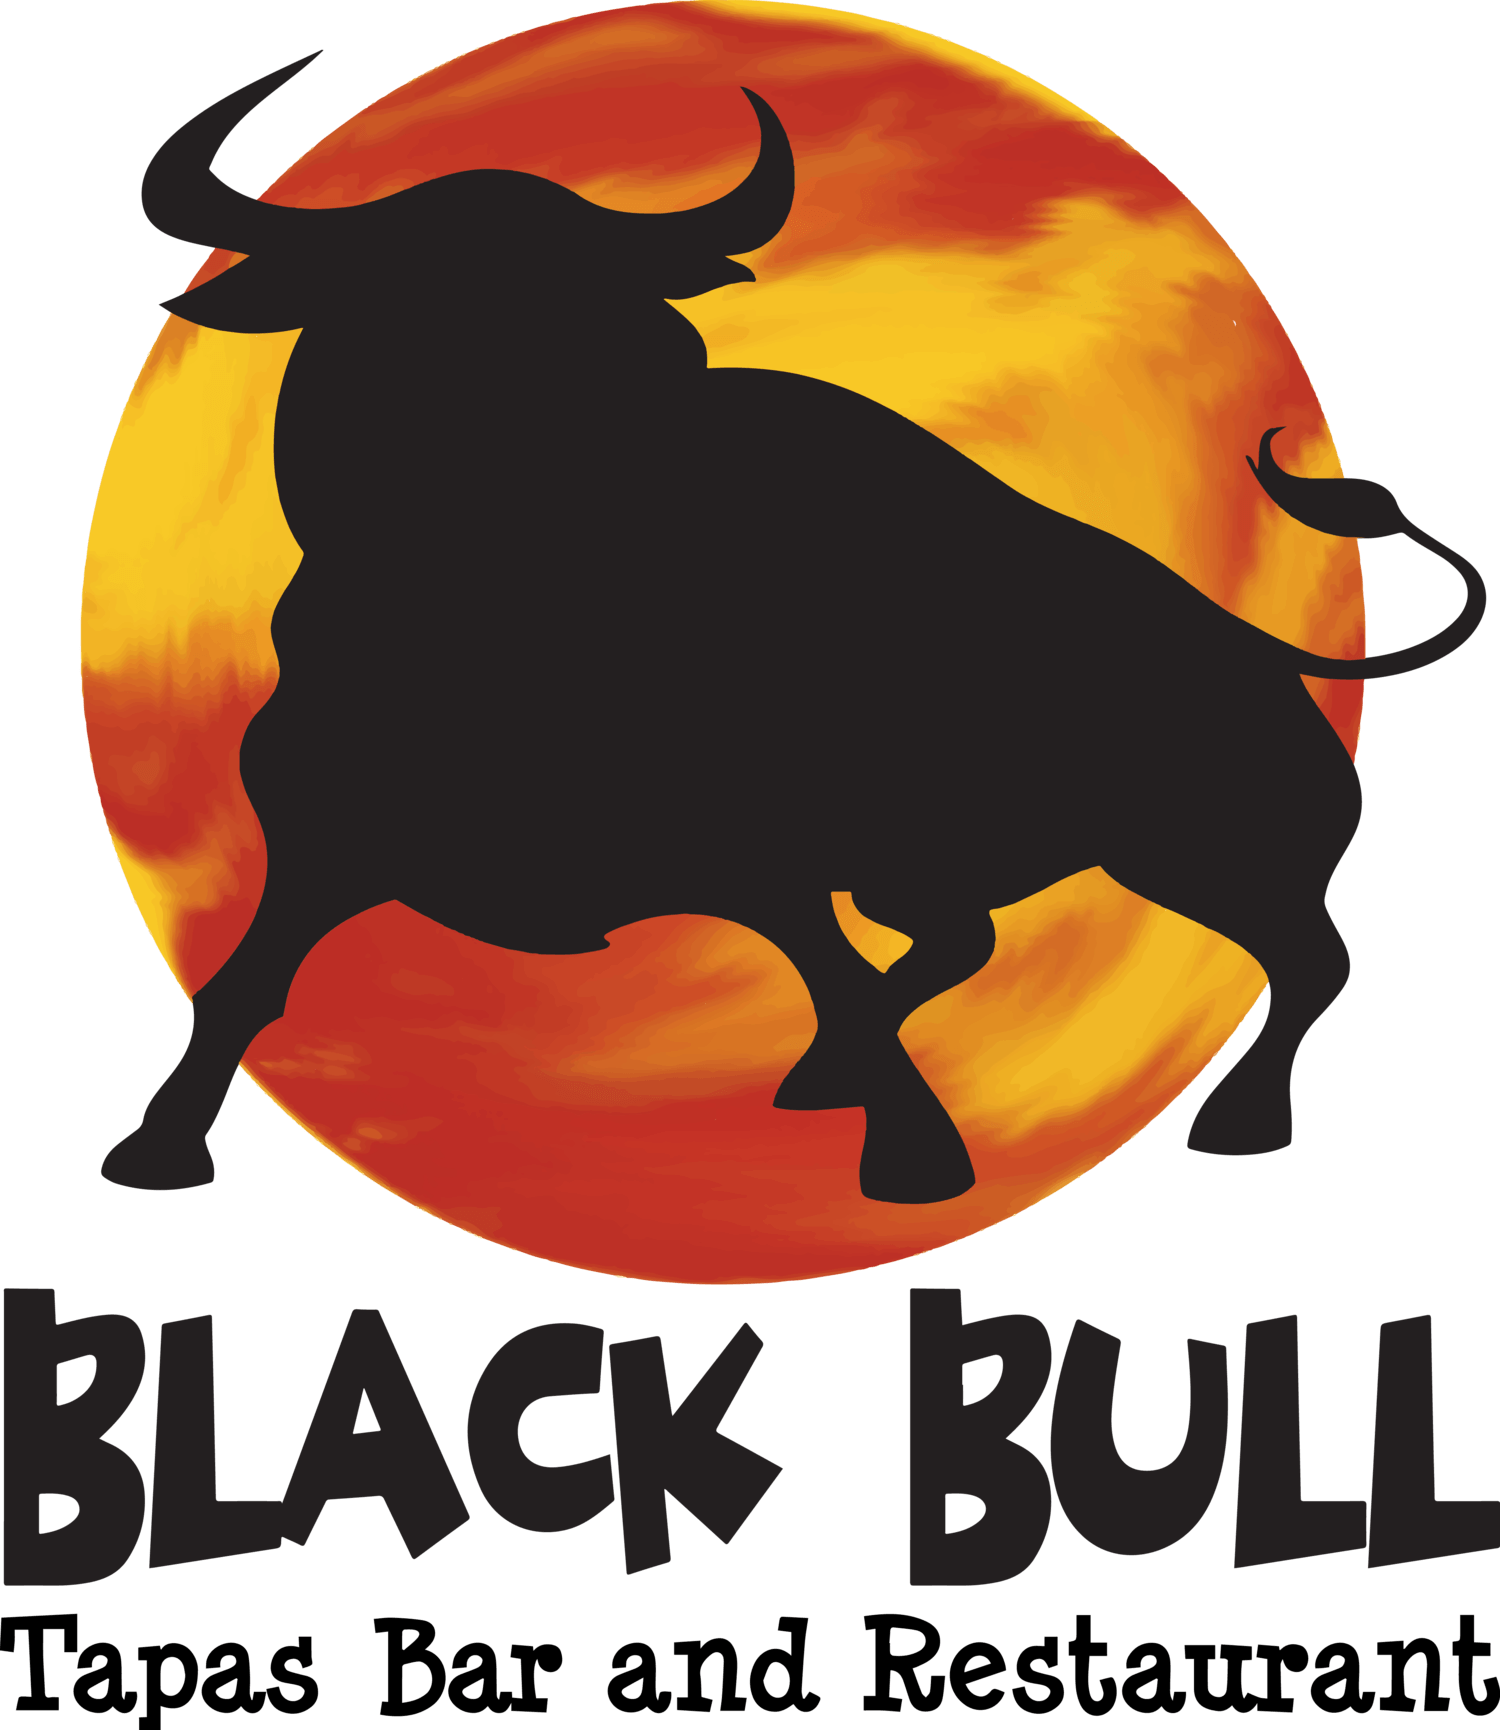 Red and Black Bull Logo - Black Bull Tapas Bar and Restaurant